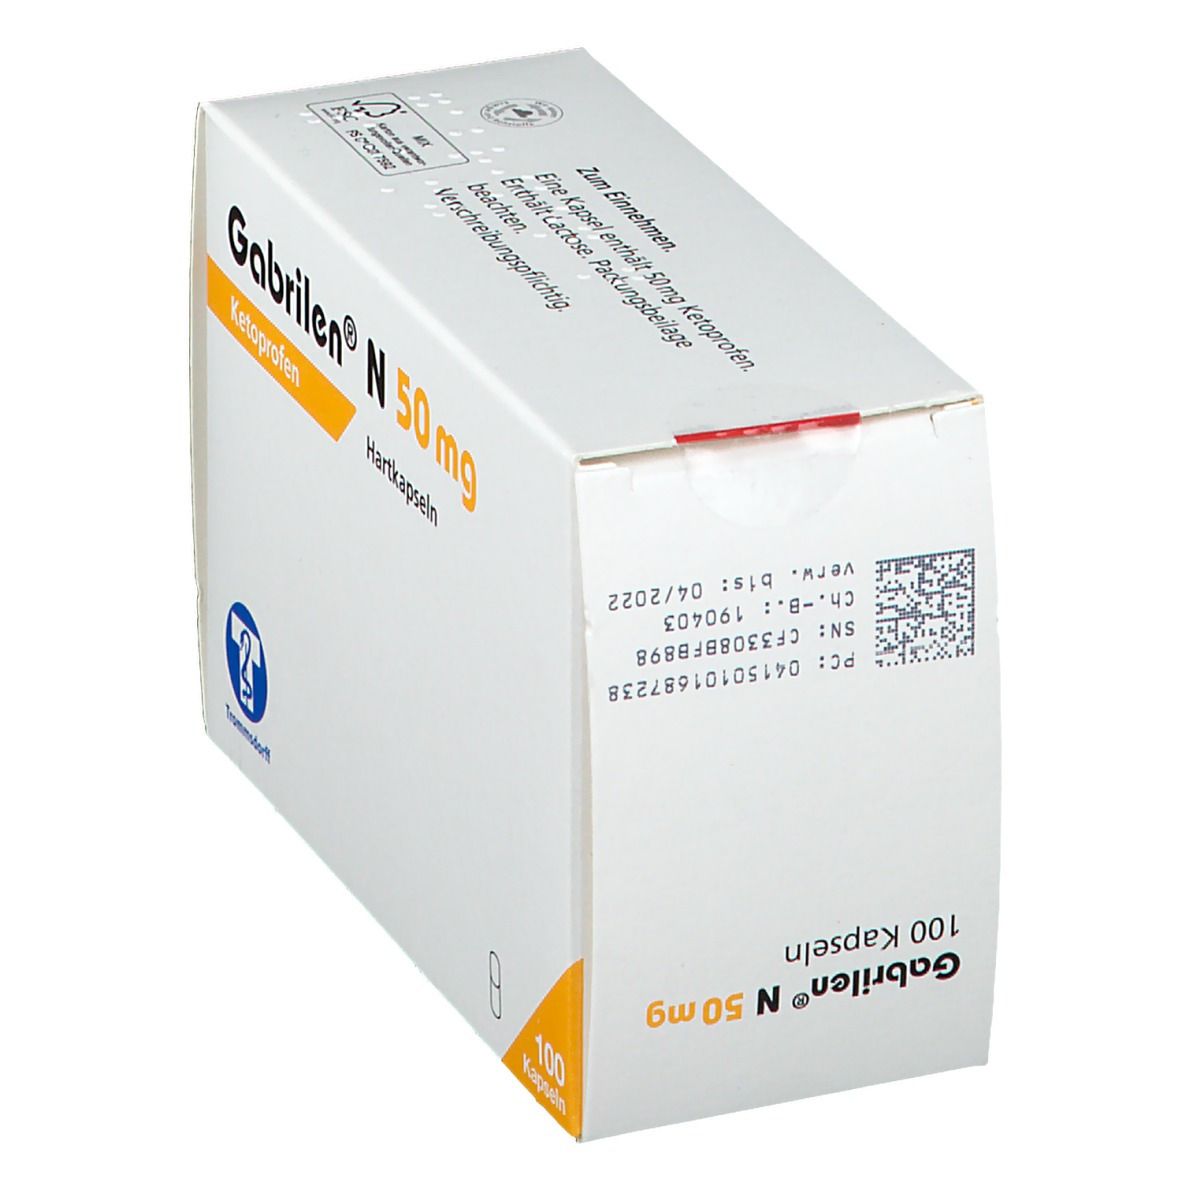 Gabrilen® N 50 mg